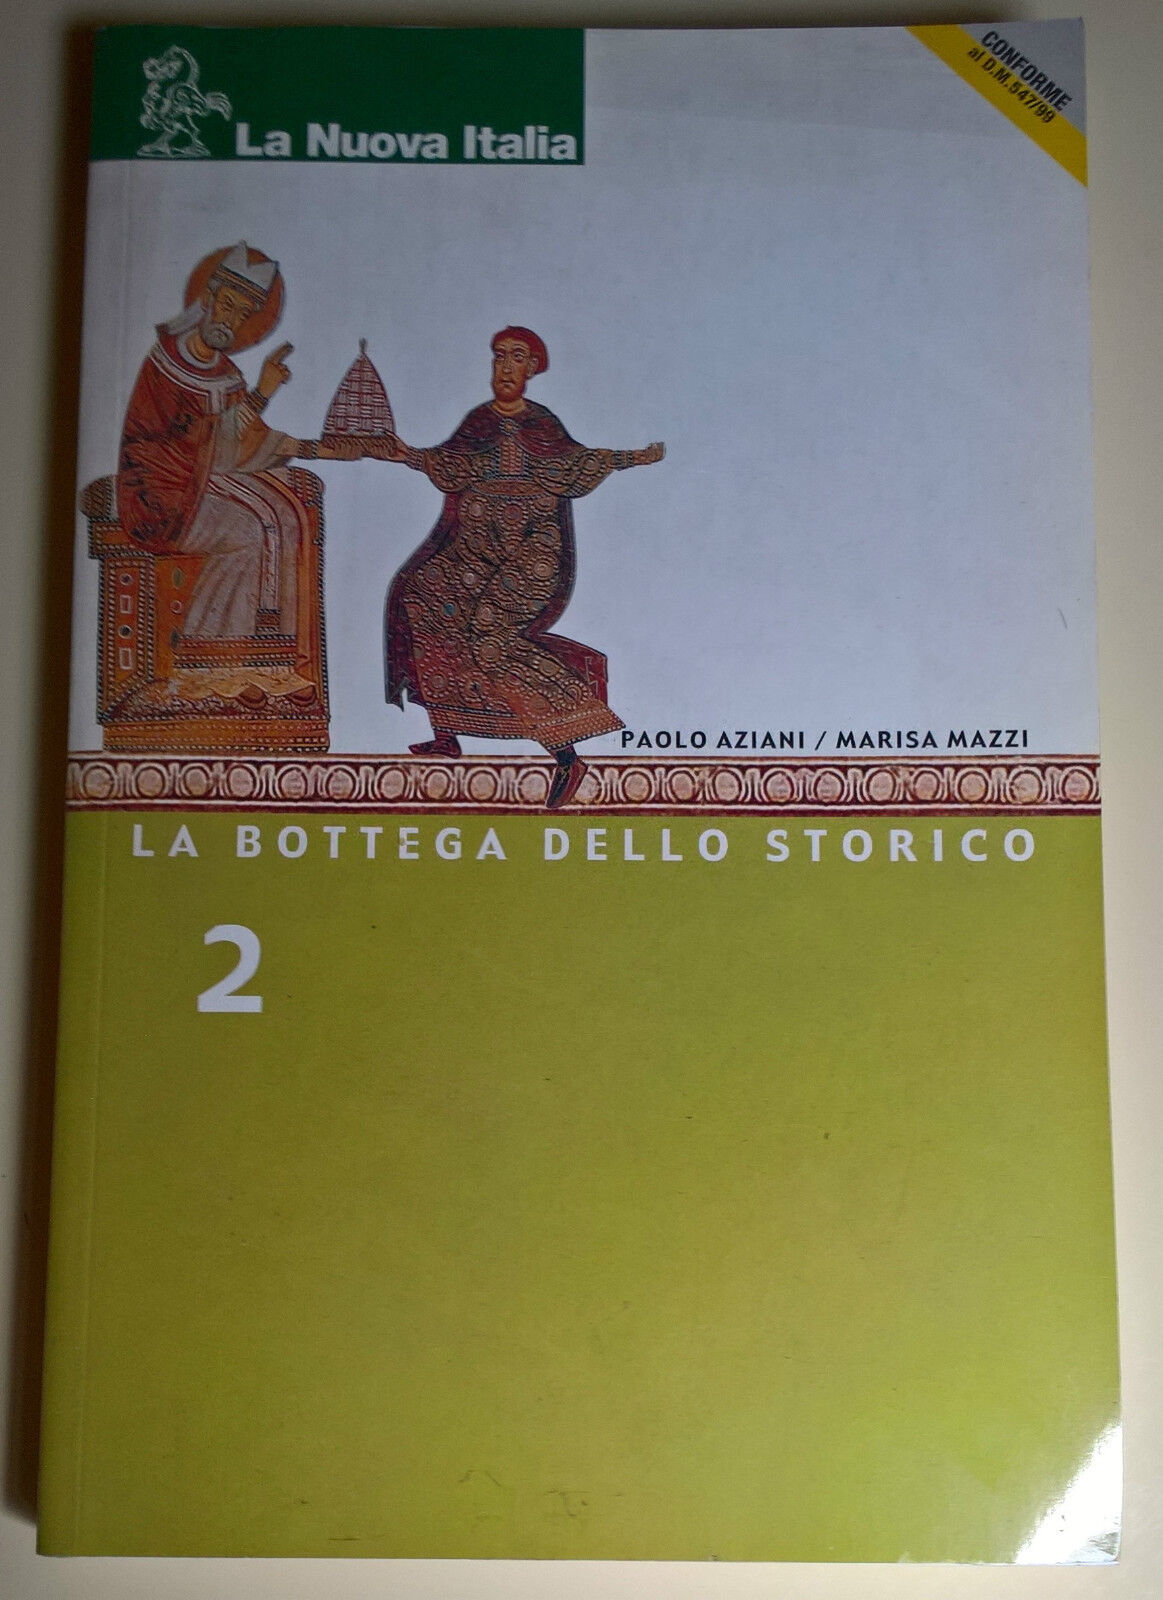 La bottega dello storico 2 - Aziani, Mazzi - 2002, La Nuova Italia - L  libro usato